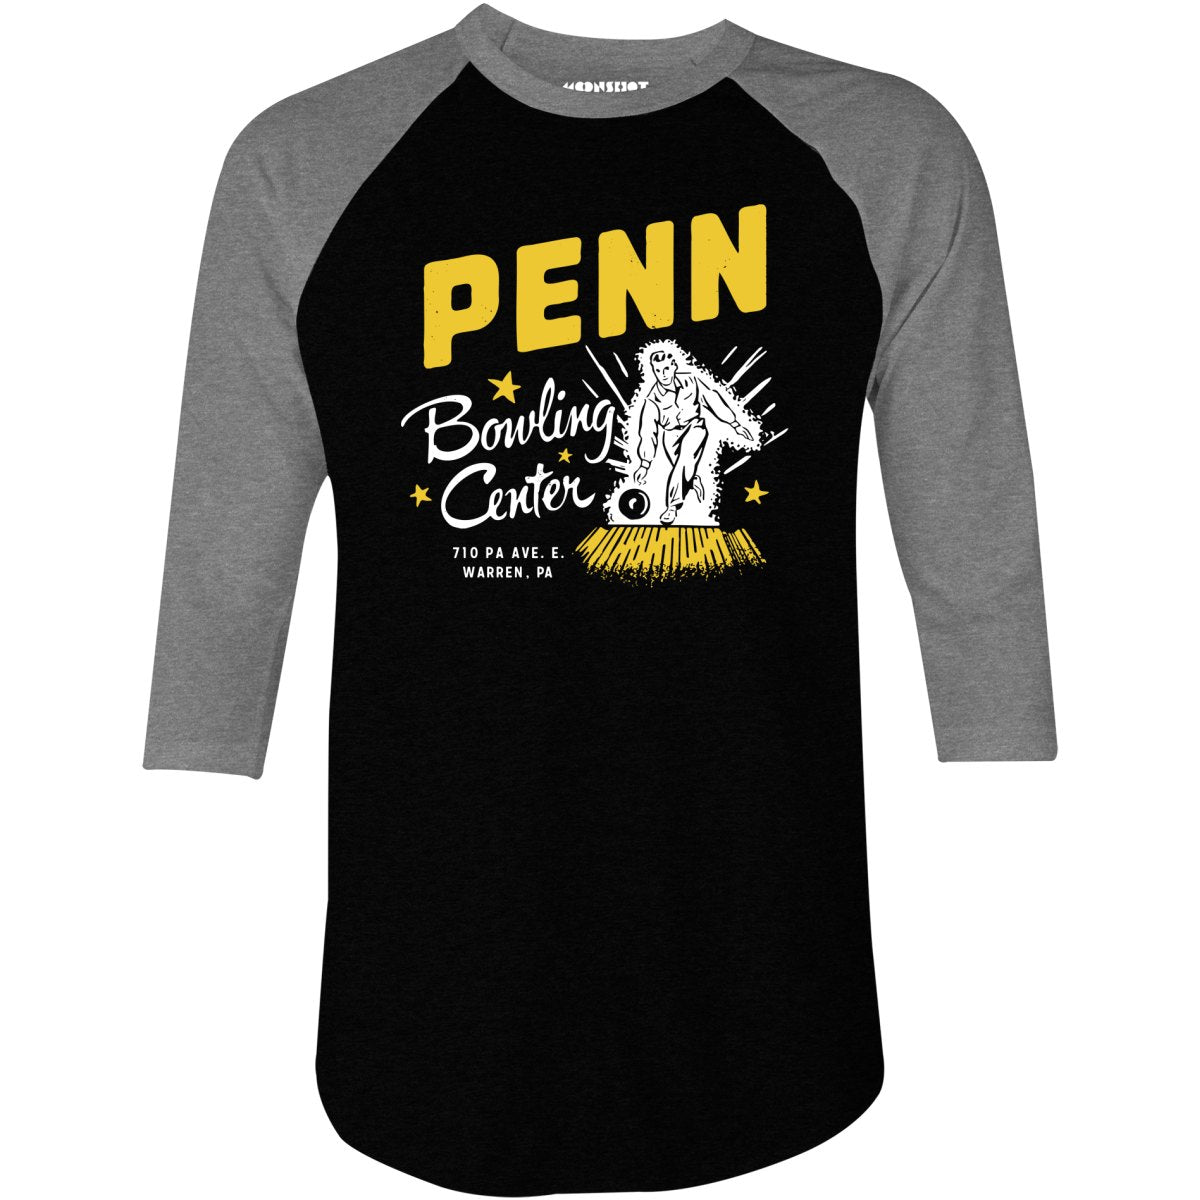 Penn Bowling Center - Warren, PA - Vintage Bowling Alley - 3/4 Sleeve Raglan T-Shirt